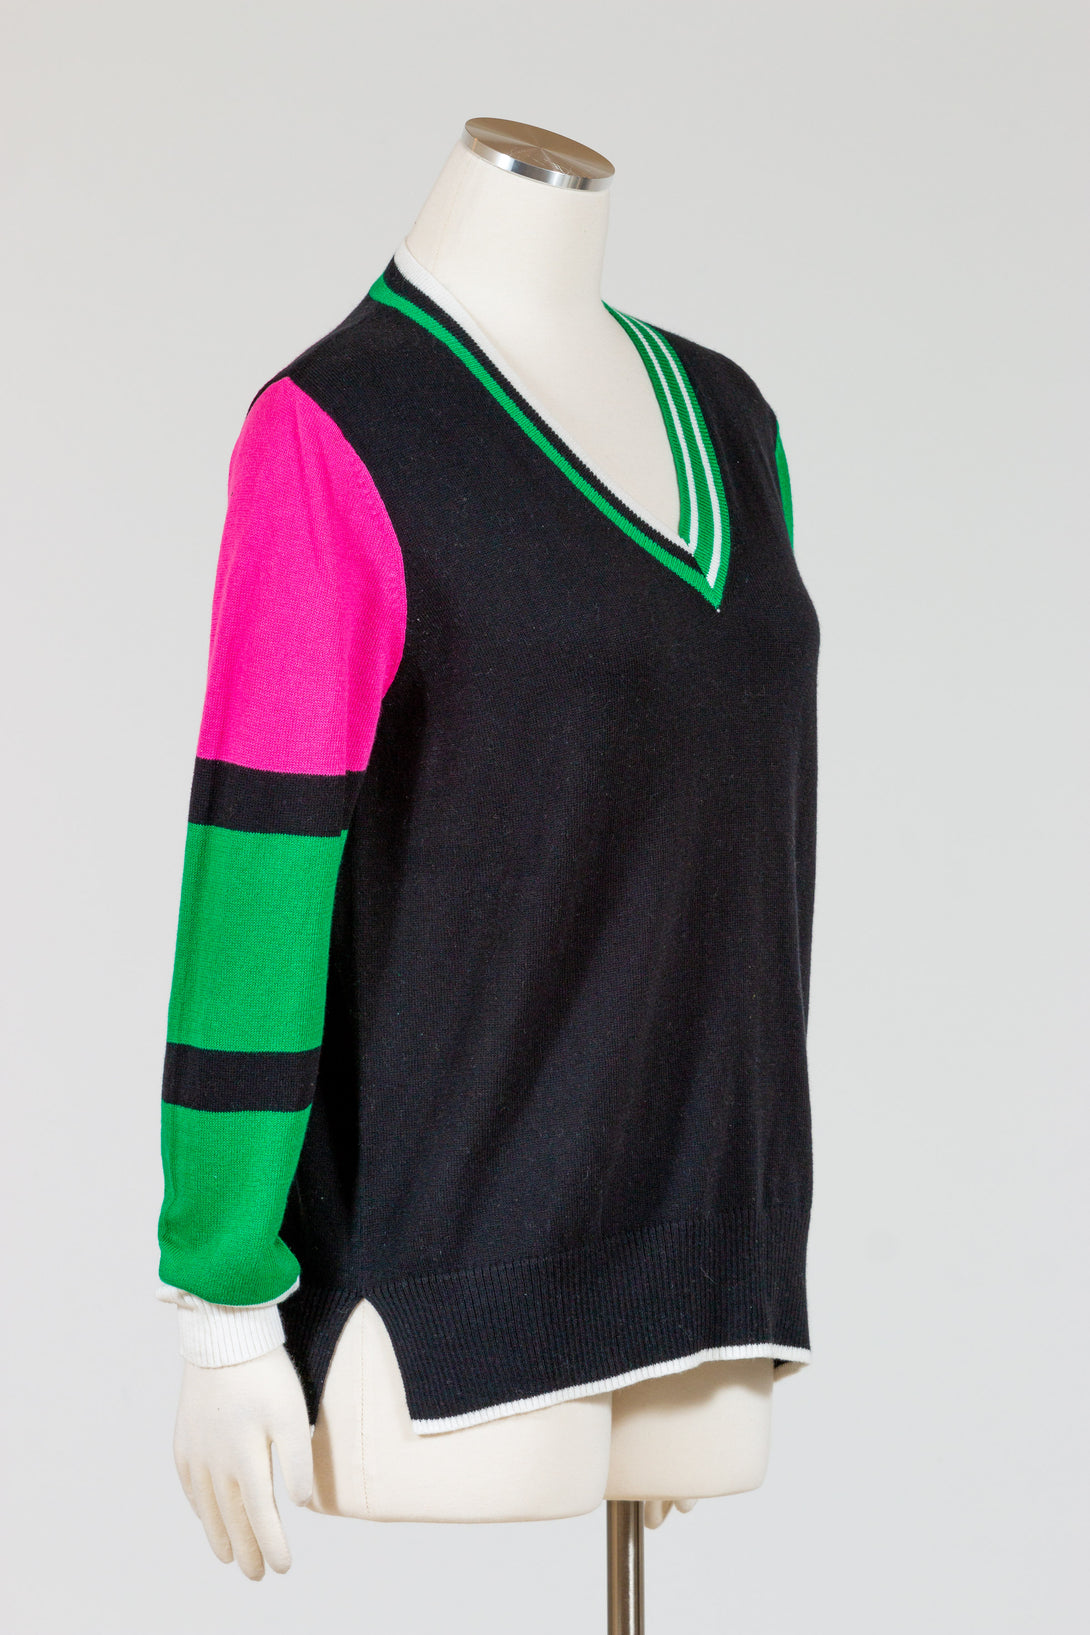 Zaket & Plover Cricket Sweater